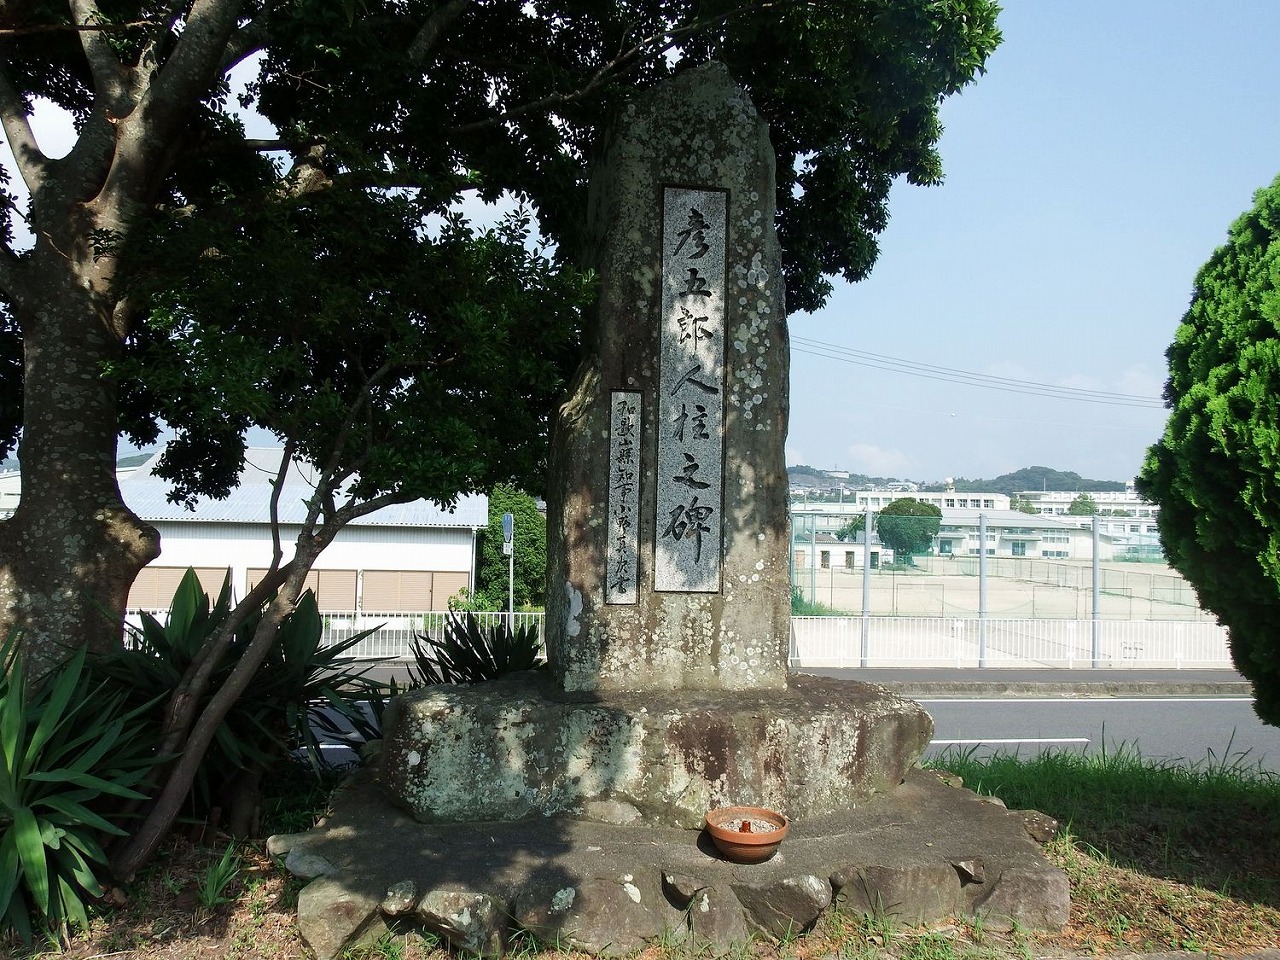 彦五郎の名を刻んだ石碑